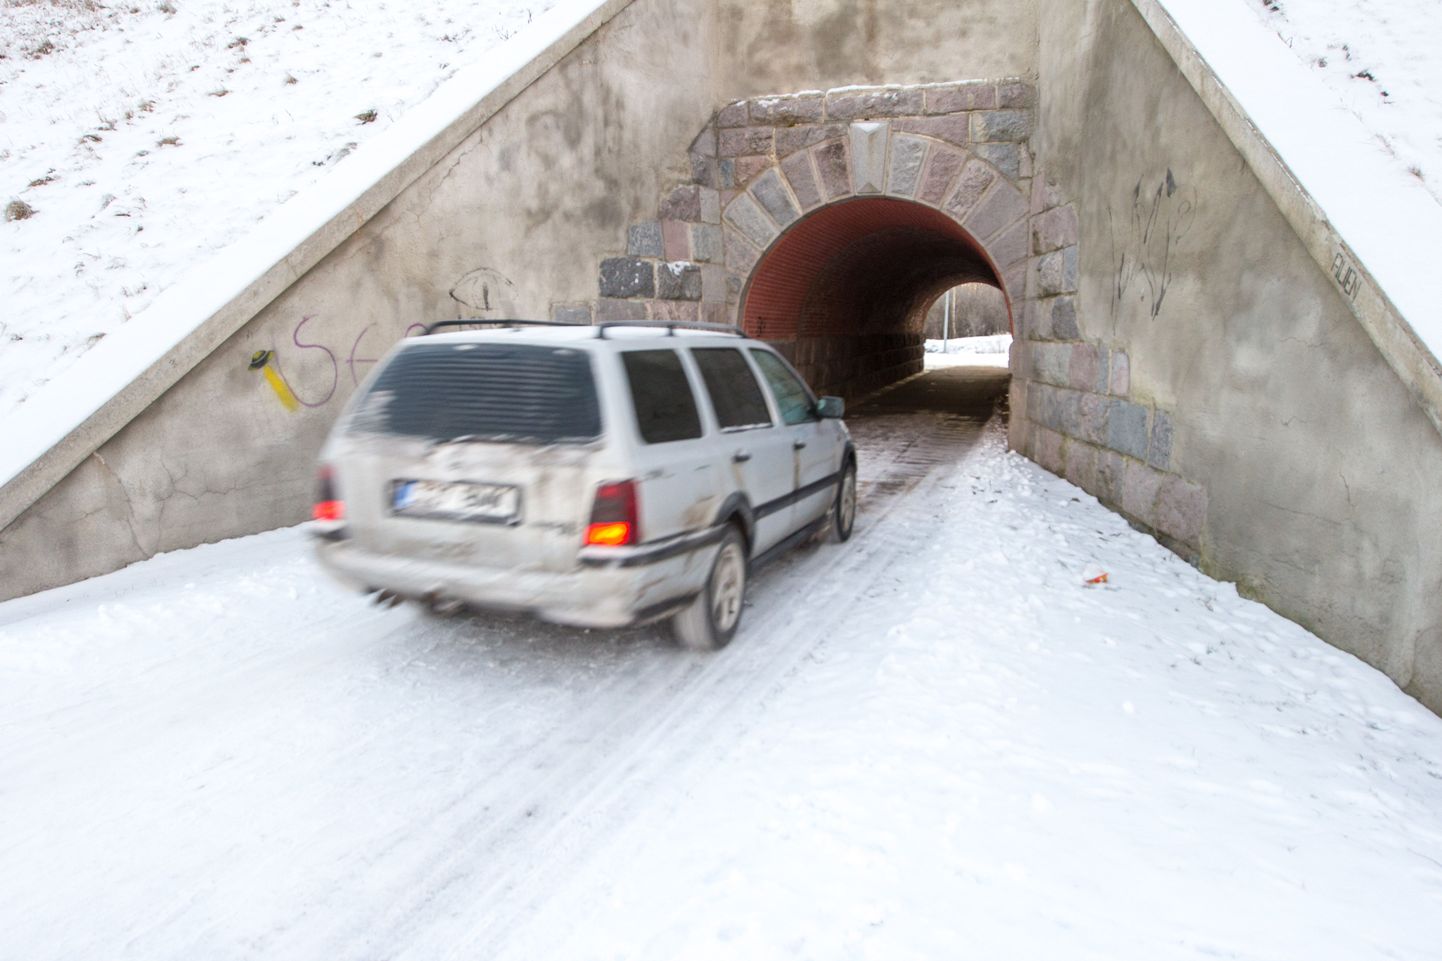 Kuigi tunnel on mõeldud jalakäijatele, leidub juhte, kes märkidest väljagi ei tee ja tunnelit sõiduteena kasutavad.